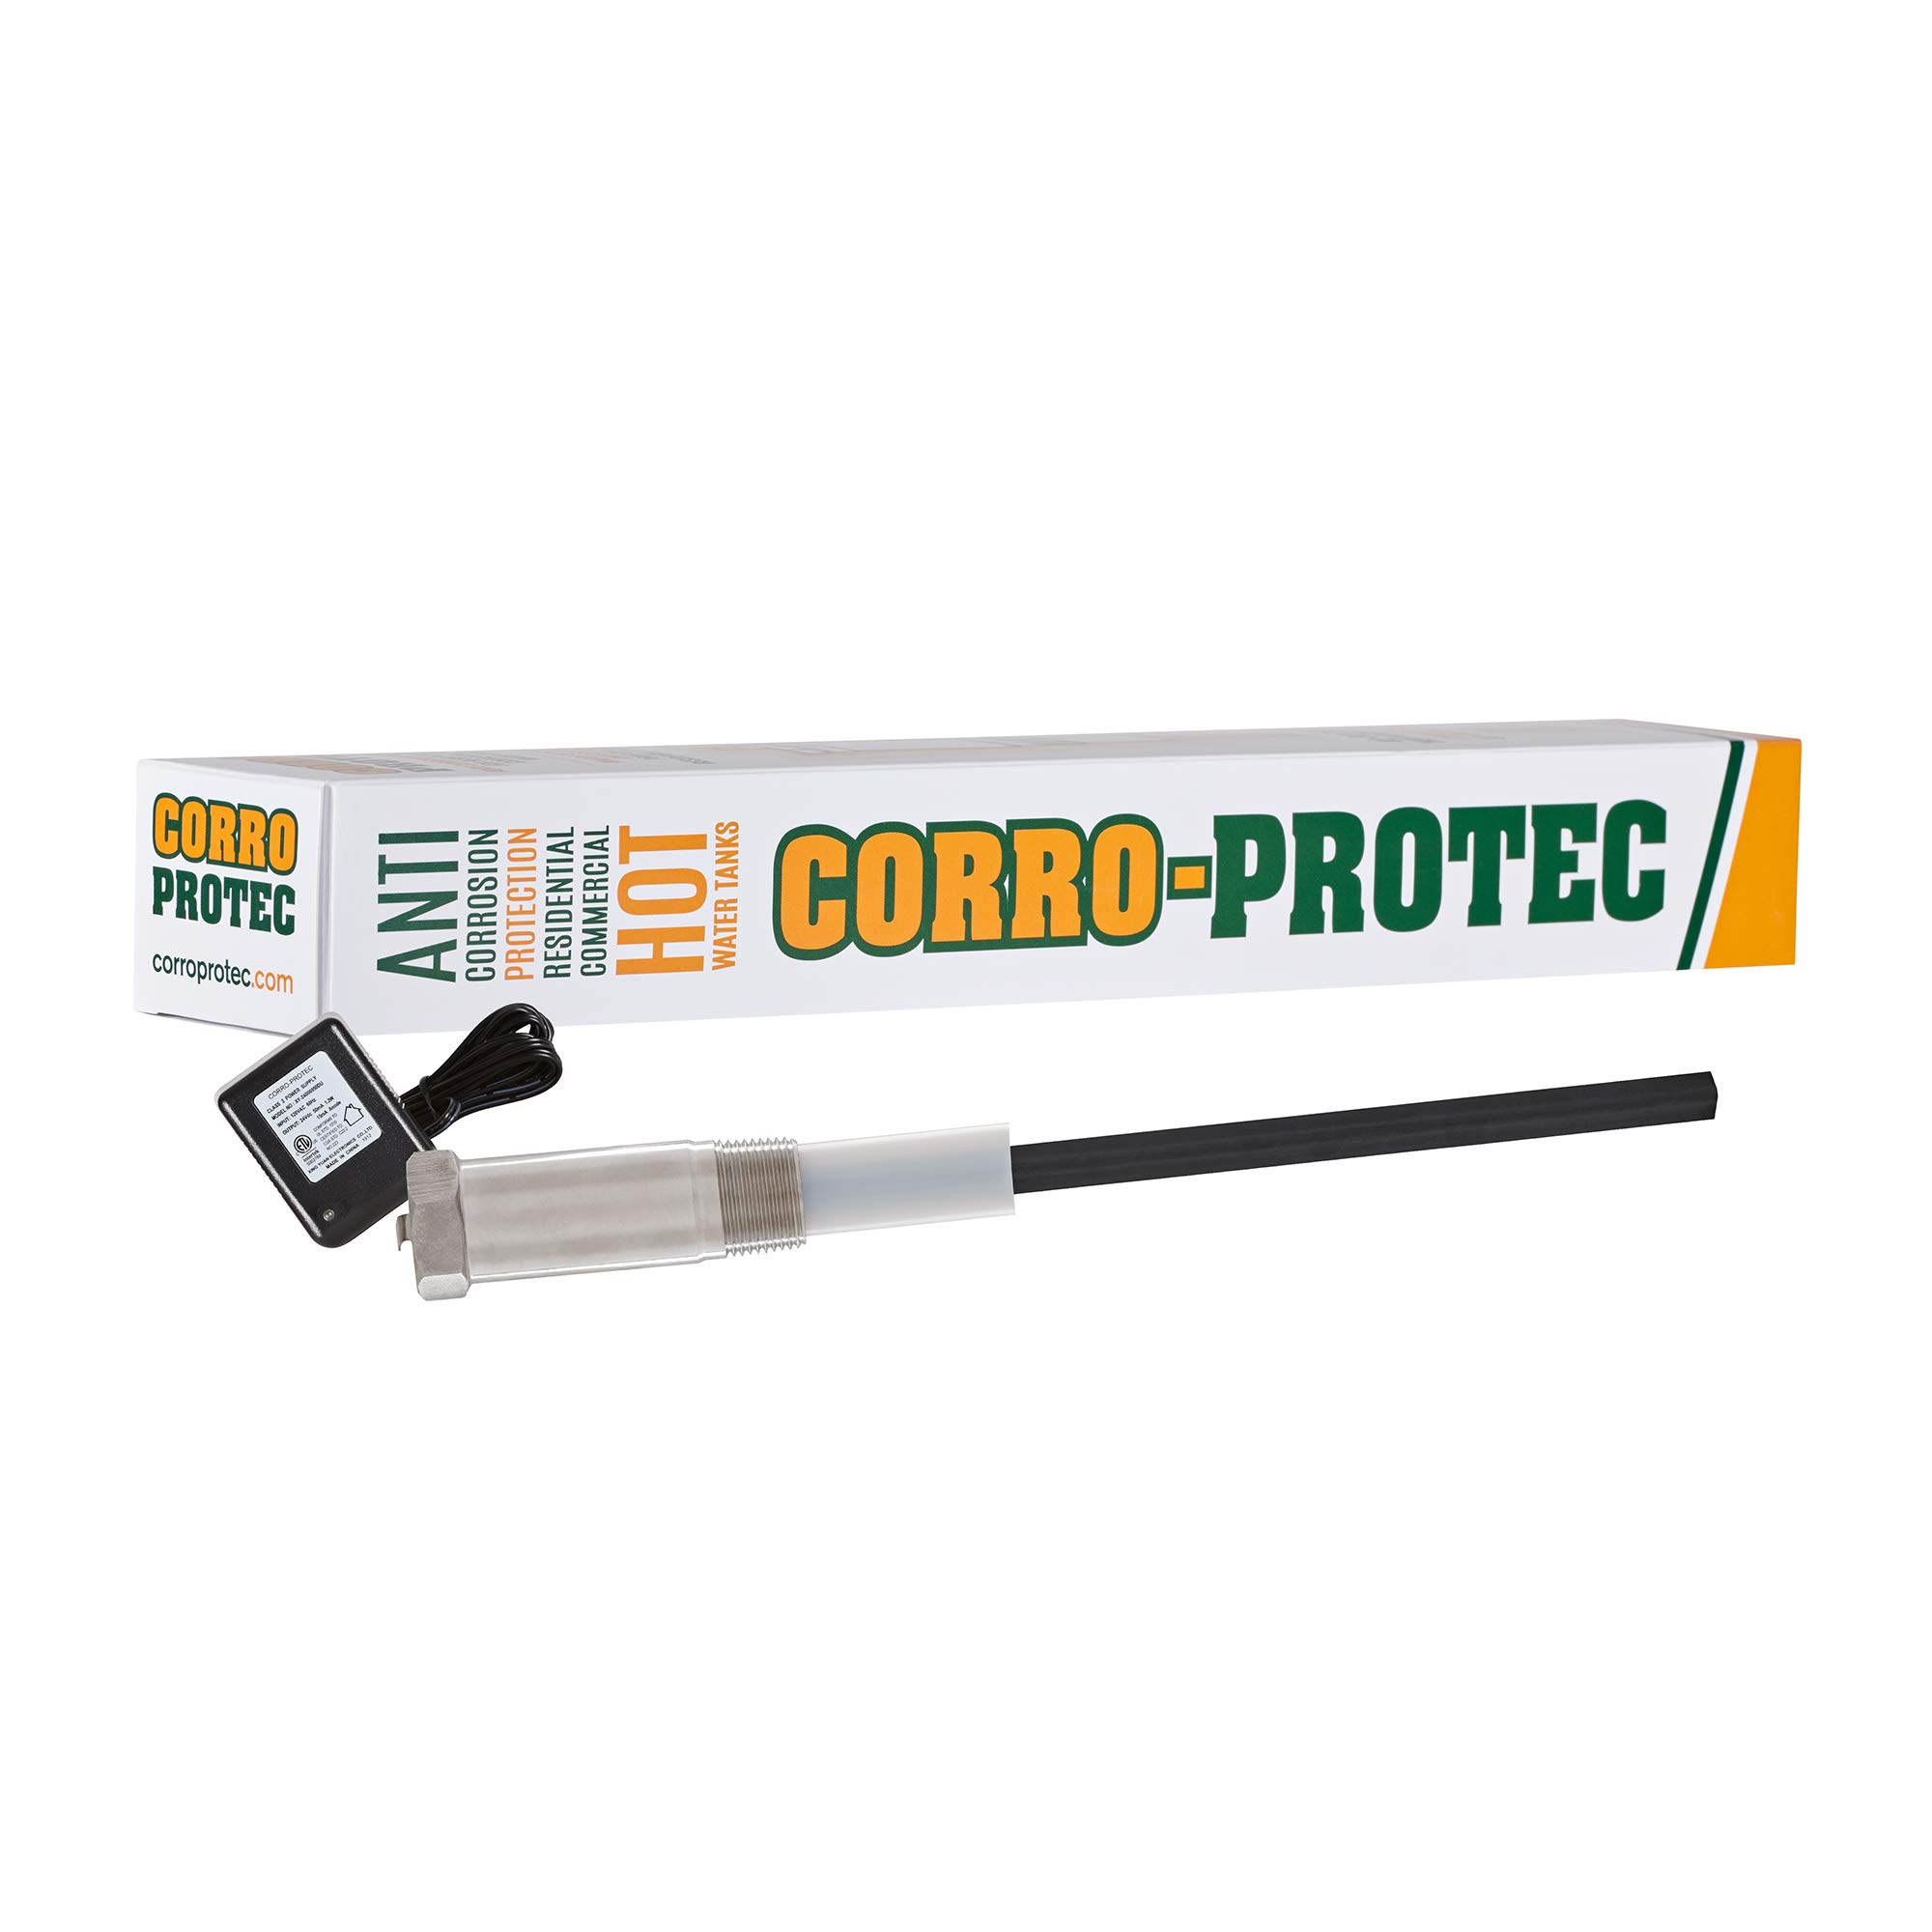  Corro-Protec قضيب الأنود التيتانيوم لسخان المياه CP-R (لسخانات المياه مع قضبان الأنود المتكاملة) - يزيل الرائحة (الكبريت...